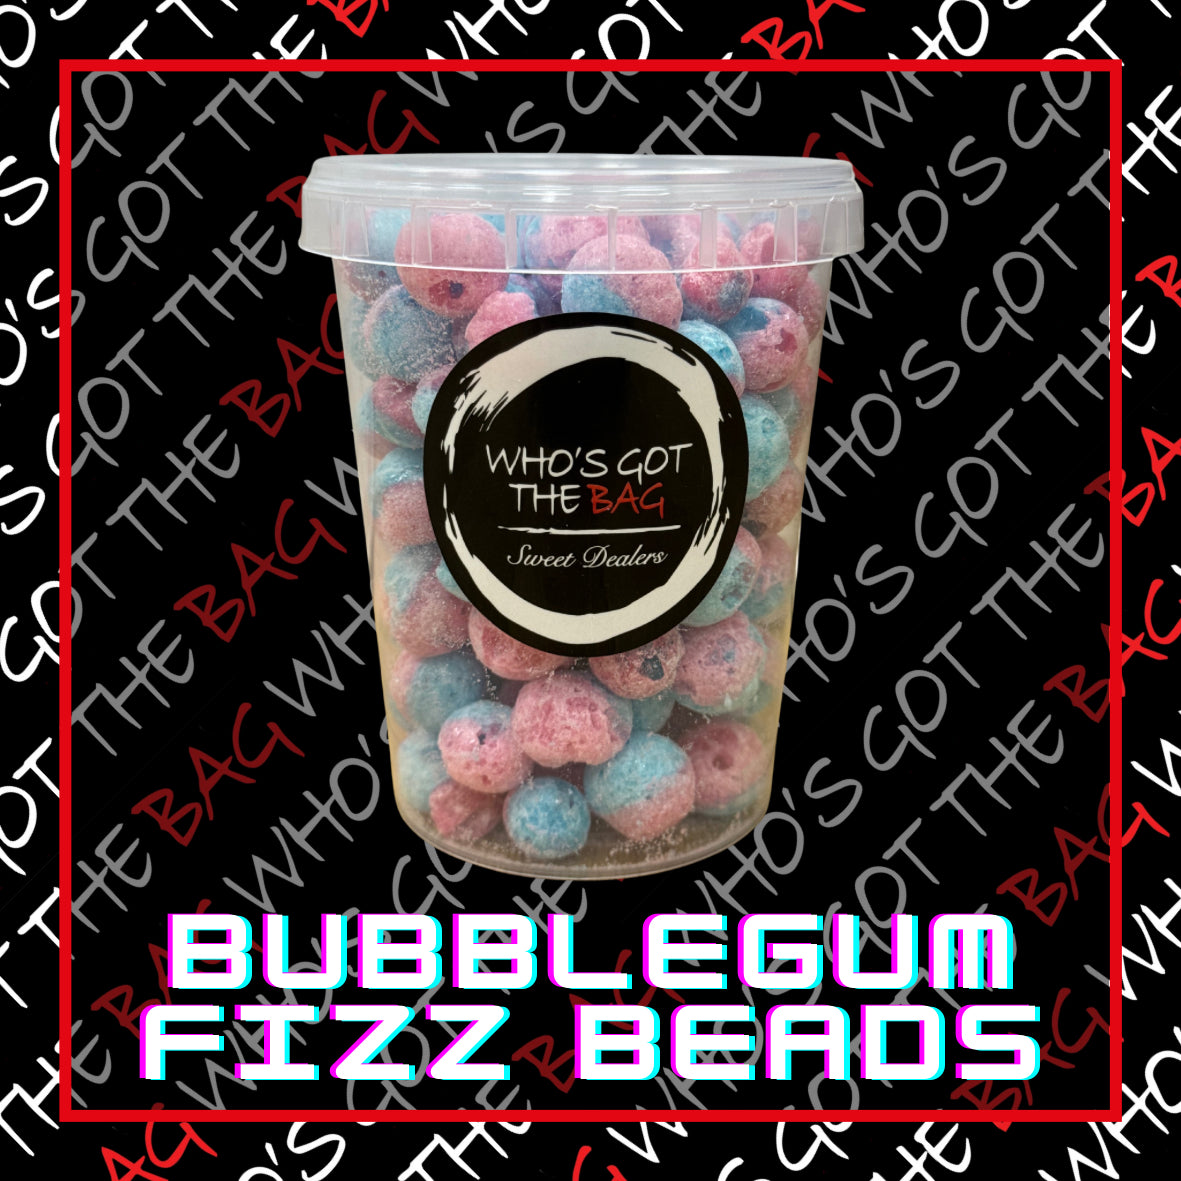 Freeze Dried Fizz-Beads